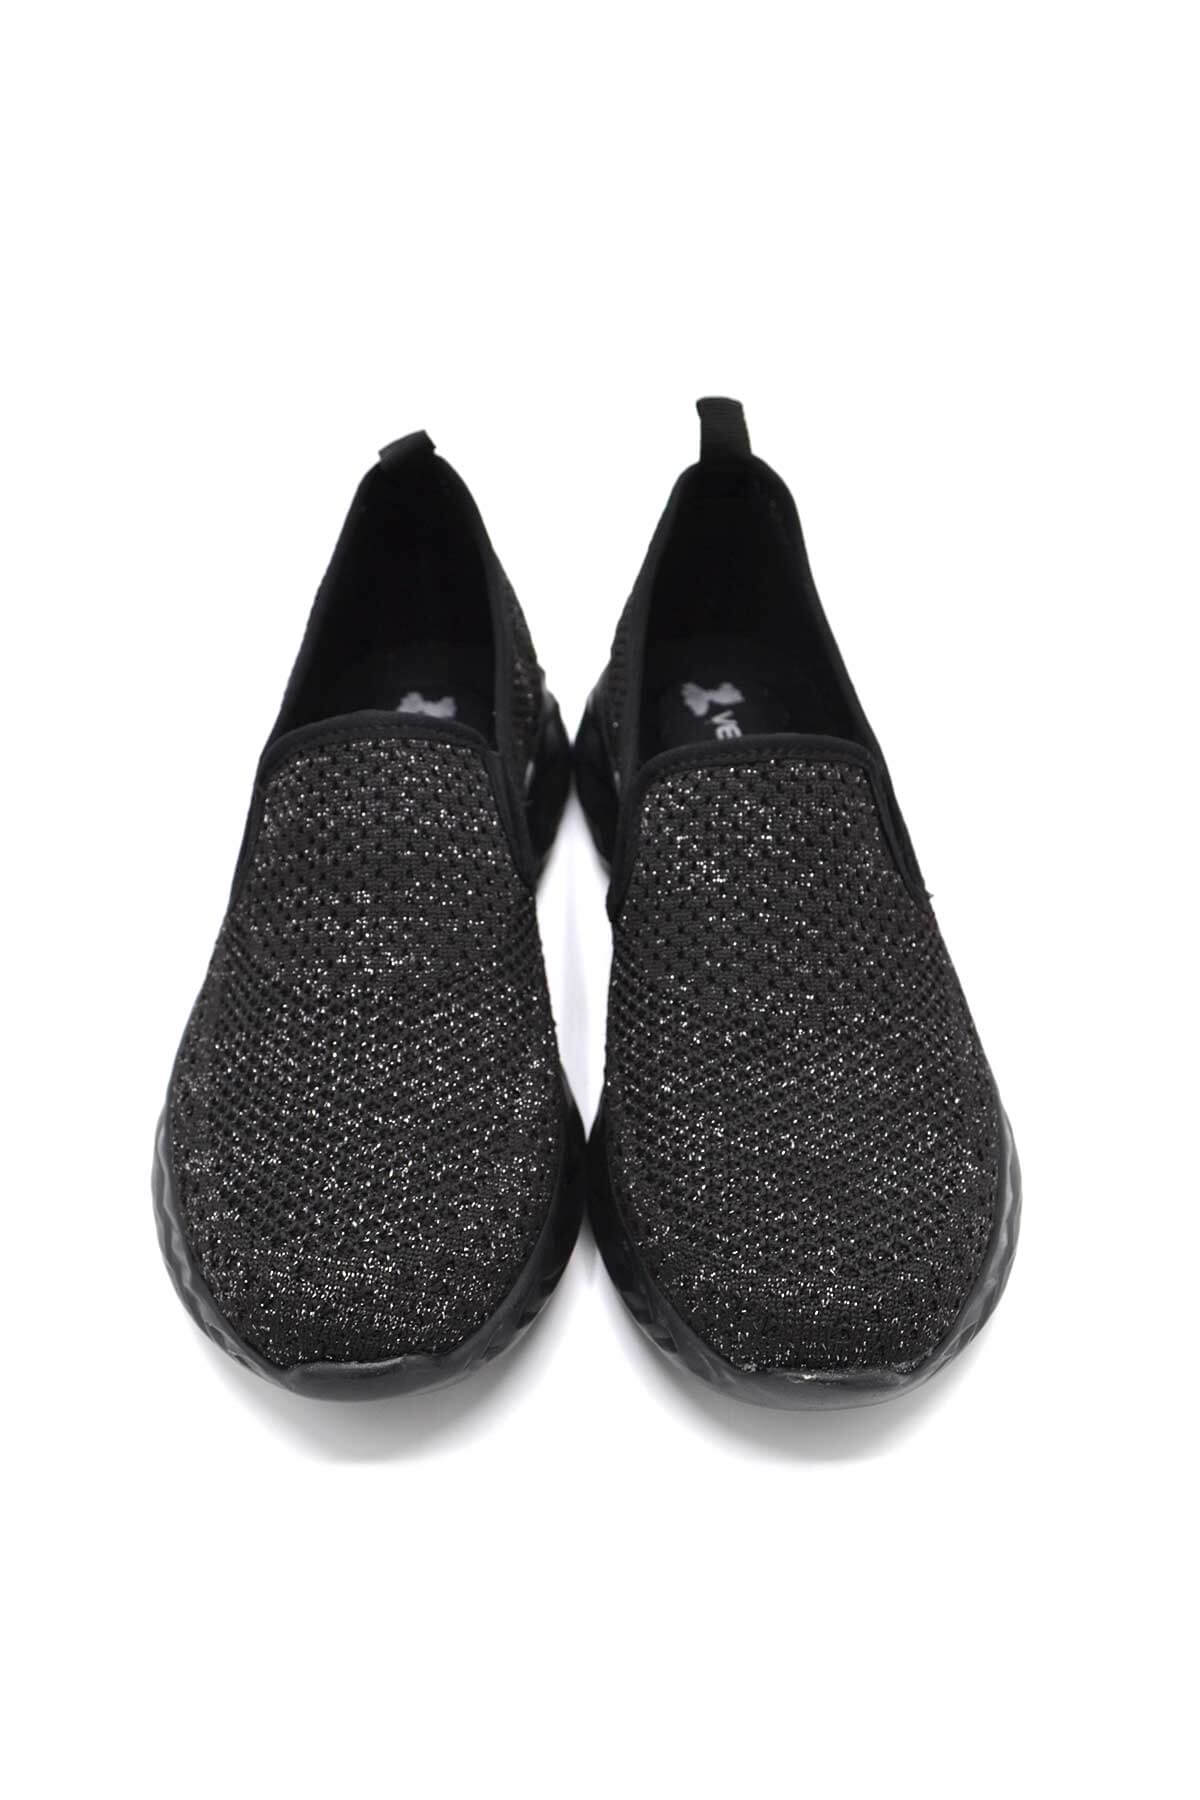 Kadın Spor Ayakkabı Siyah 2217803Y - Thumbnail